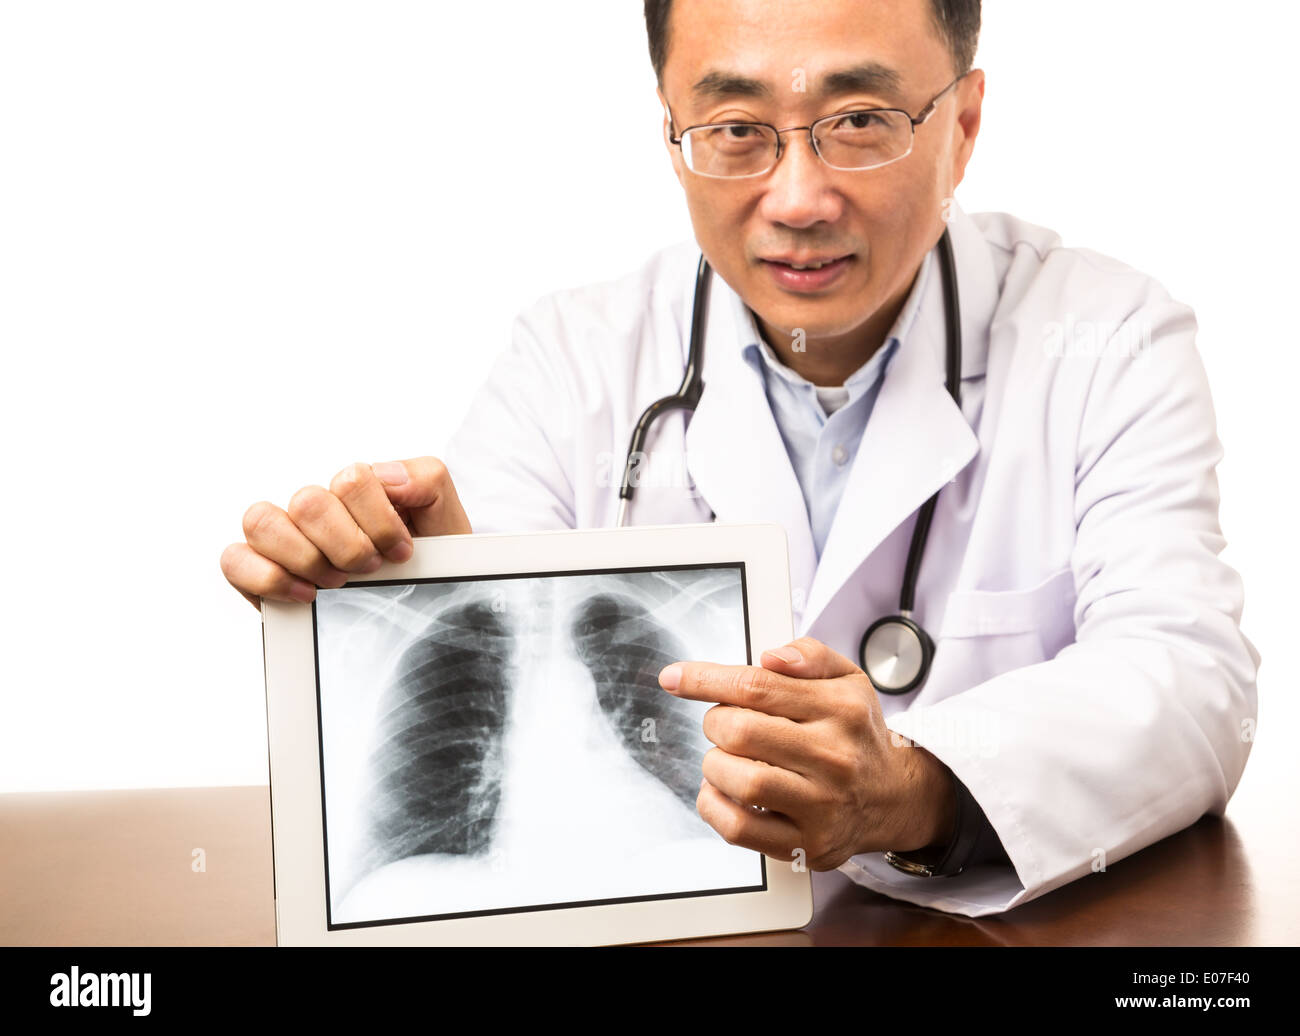 Médico varón mostrando una imagen de rayos X digitales en un tablet Foto de stock